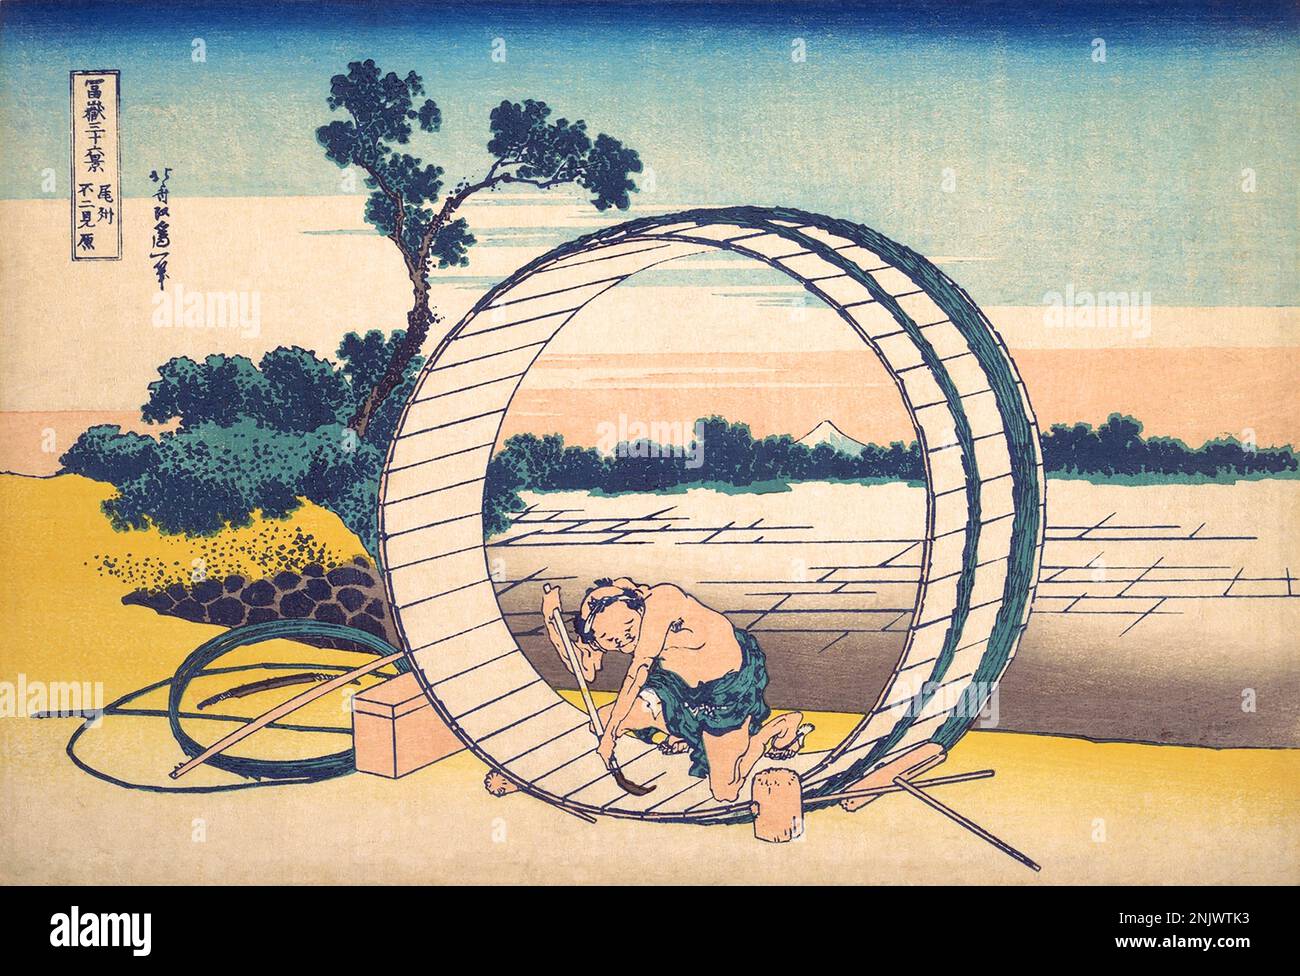 Japan: ‘Fujimigahara in der Provinz Owari’. Ukiyo-e Holzschnitt aus der Serie ‘Thirty-Six views of Mount Fuji’ von Katsushika Hokusai (31. Oktober 1760 - 10. Mai 1849), 1830. ‘Thirty-Six Views of Mount Fuji’ ist eine Serie von Holzschnitten der japanischen Künstlerin Katsushika Hokusai, die „Sukiyo-e“ ‘. Die Serie zeigt den Fuji in unterschiedlichen Jahreszeiten und Wetterbedingungen an verschiedenen Orten und Entfernungen. Es besteht tatsächlich aus 46 Drucken, die zwischen 1826 und 1833 entstanden sind. Die ersten 36 wurden in die ursprüngliche Publikation aufgenommen und aufgrund ihrer Popularität kamen 10 weitere hinzu. Stockfoto